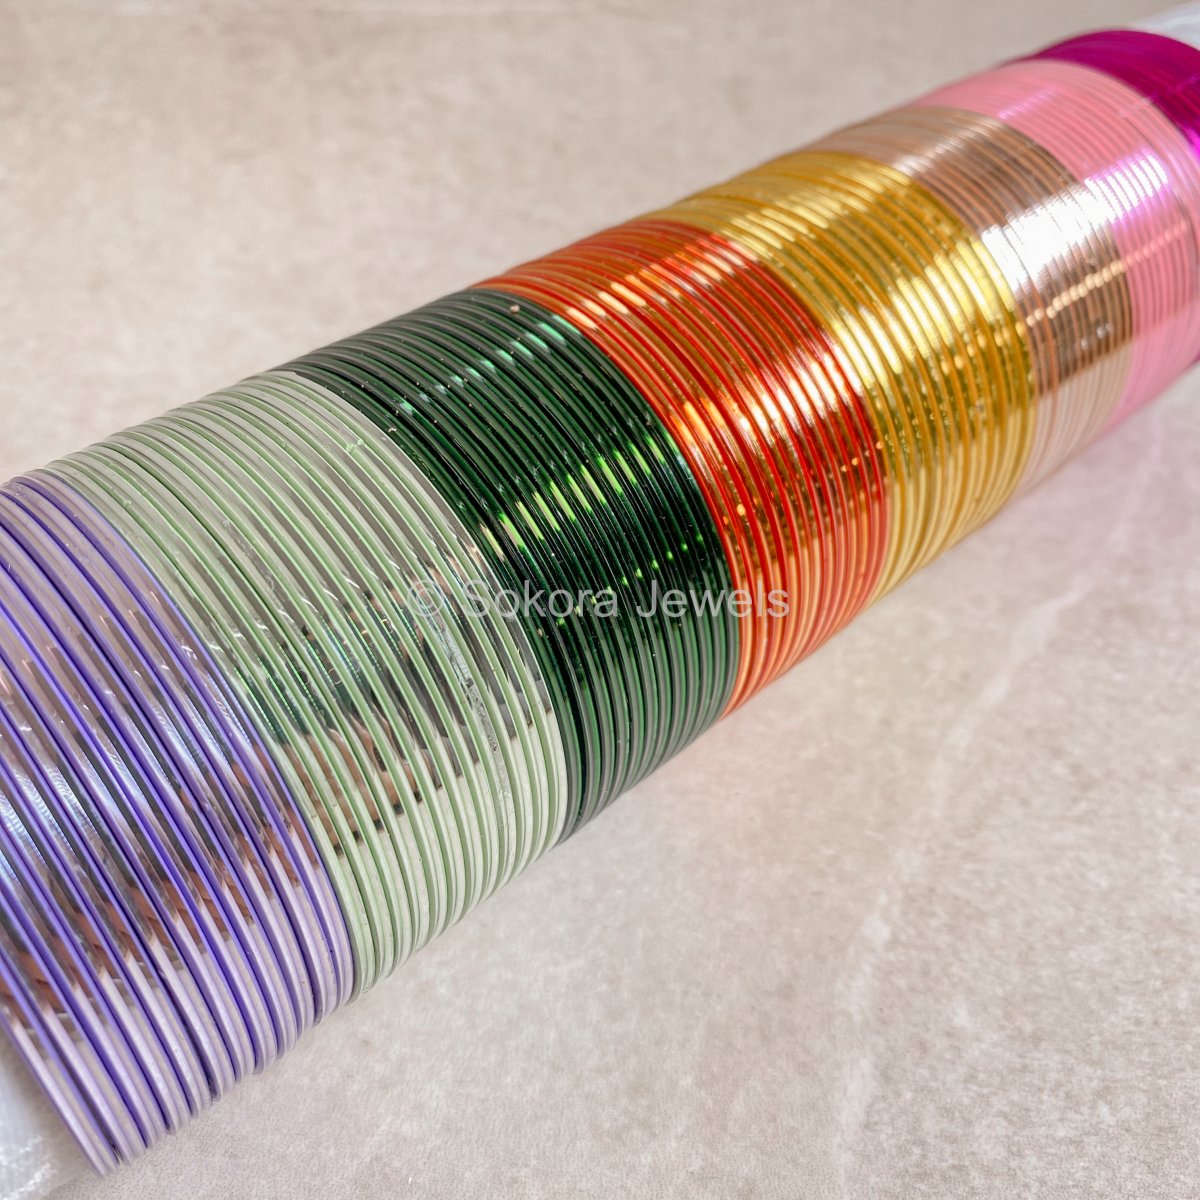 Block of 12 Coloured Bangles - Shiny - SOKORA JEWELSBlock of 12 Coloured Bangles - Shiny